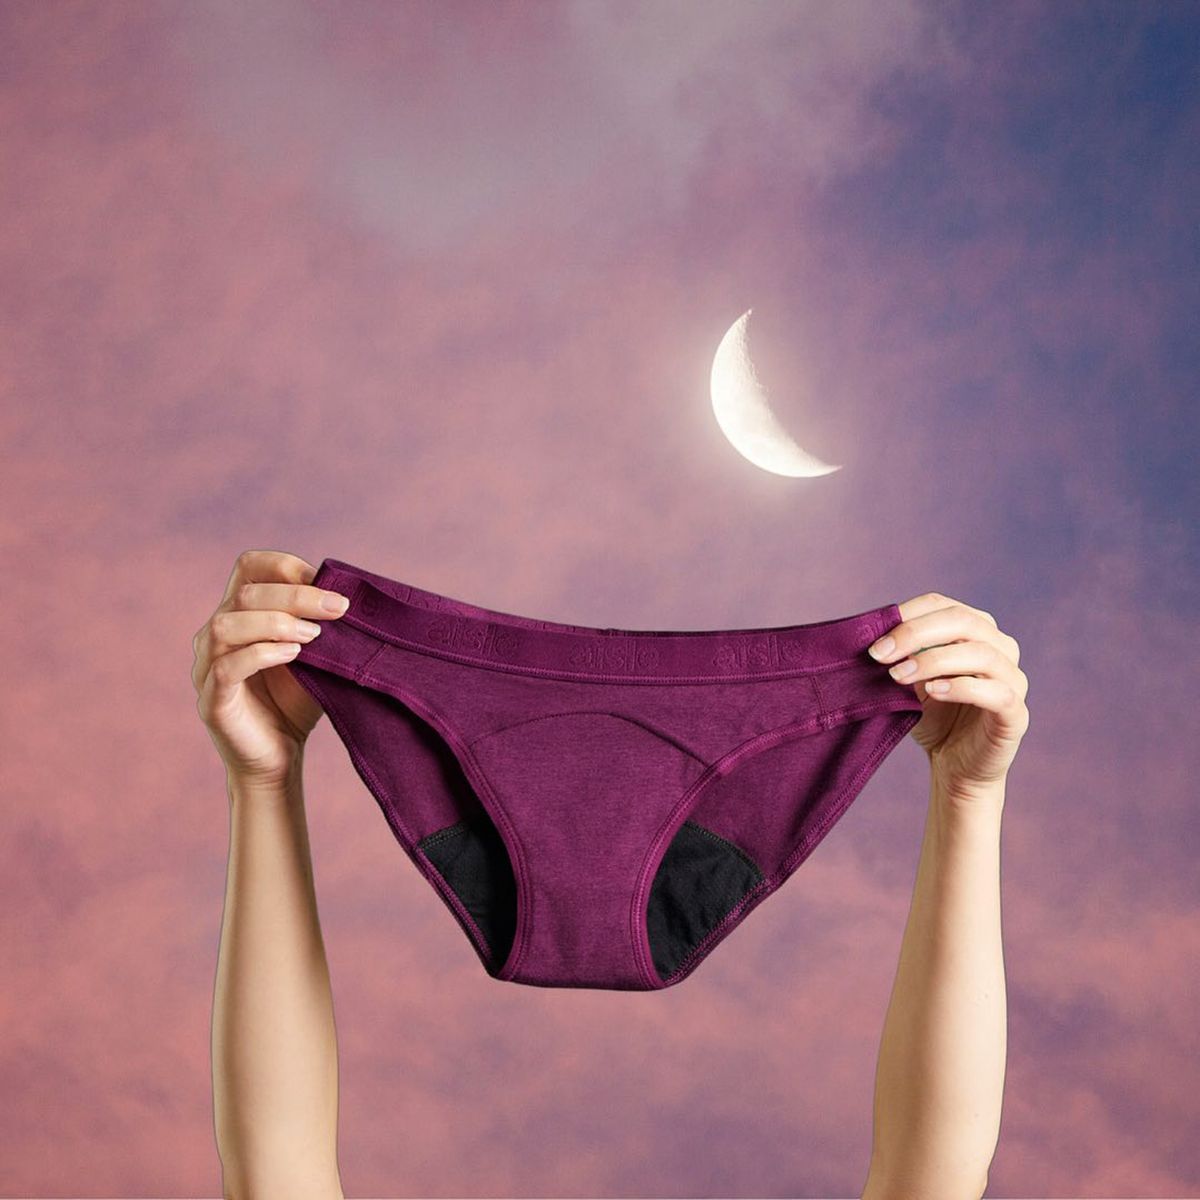 Period Underwear